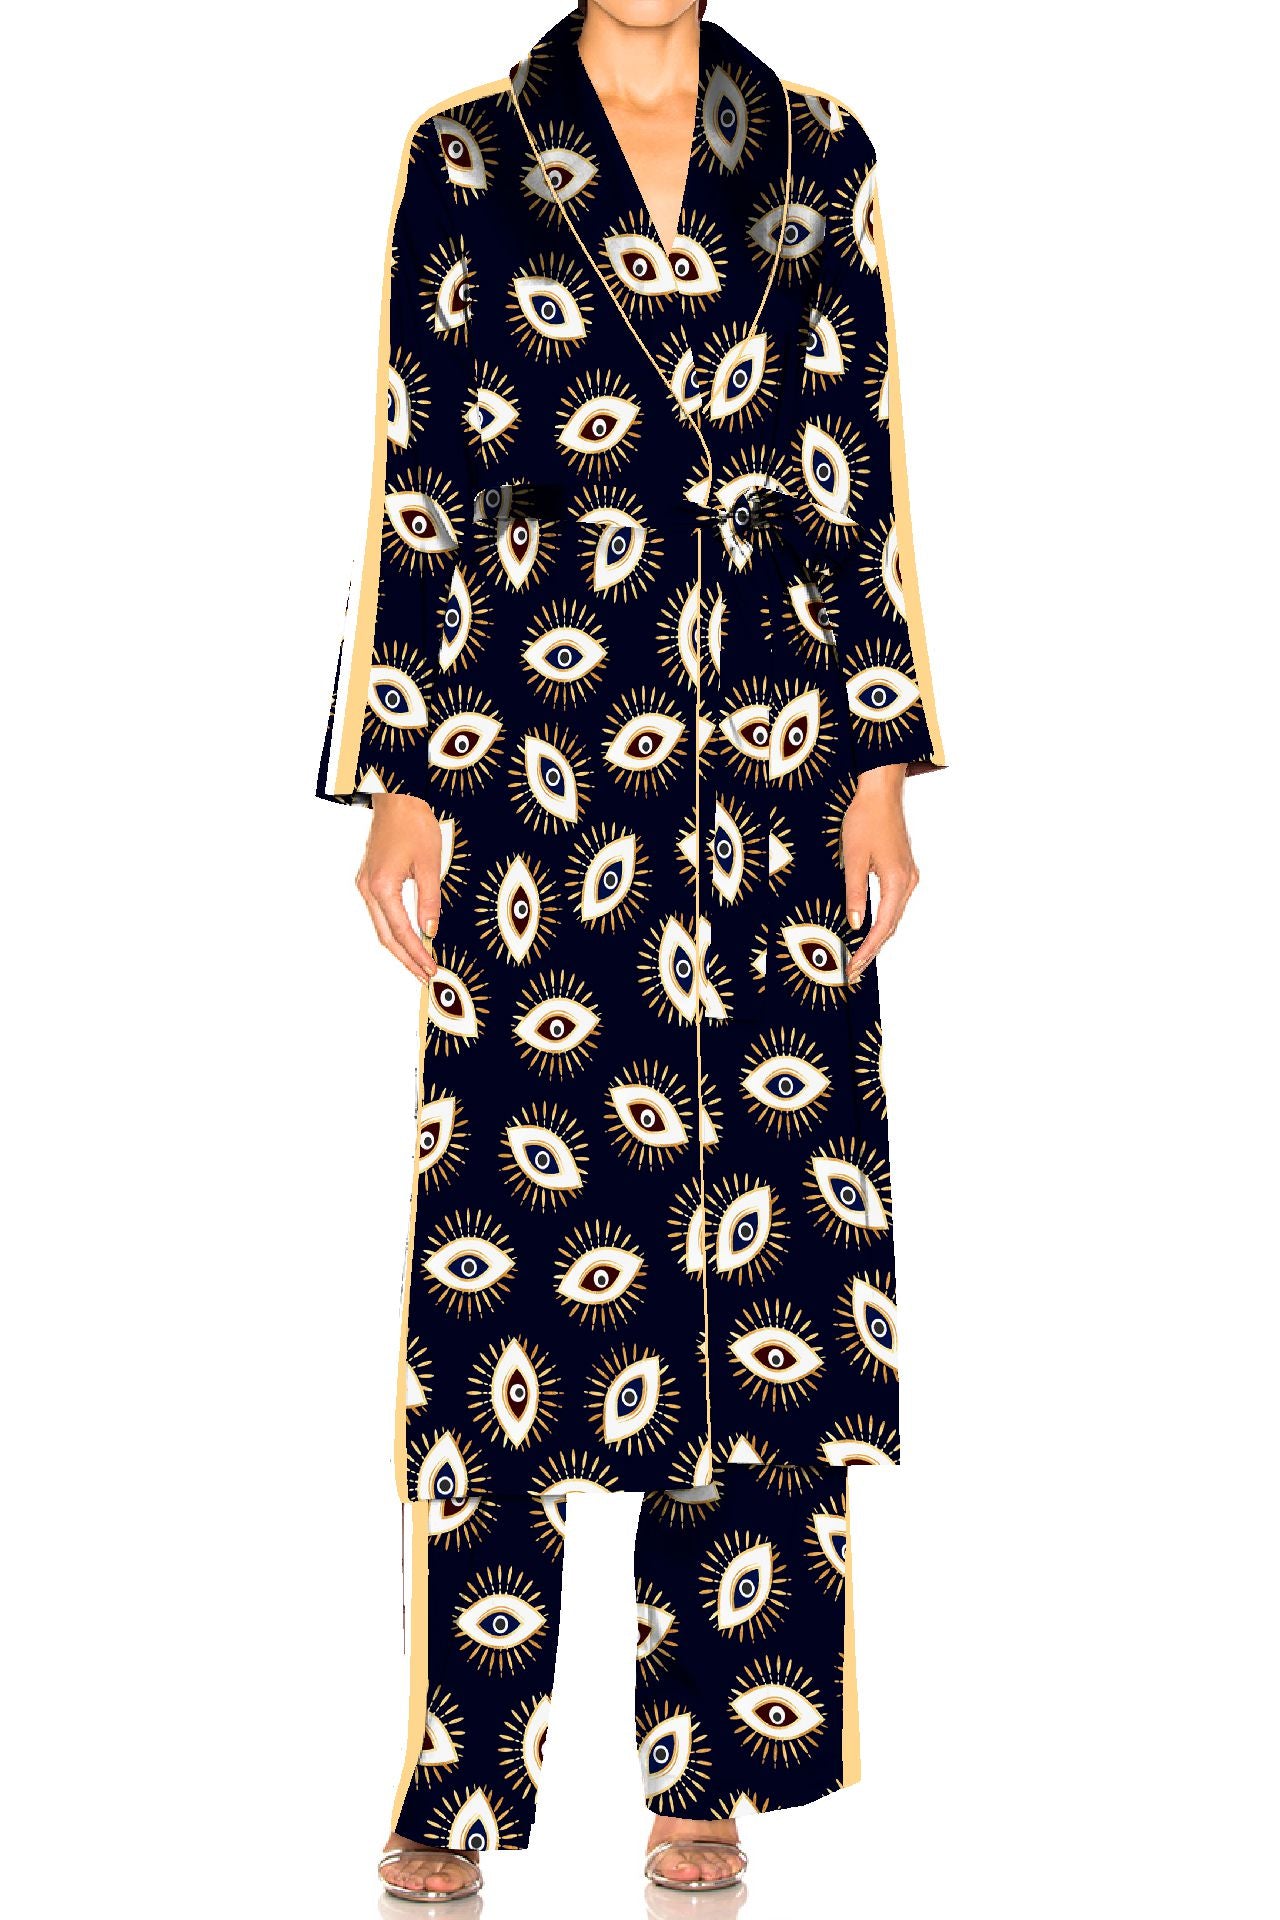 "Kyle X Shahida" "pajamas with matching robe" "printed lounge set" "silk satin pajama set"